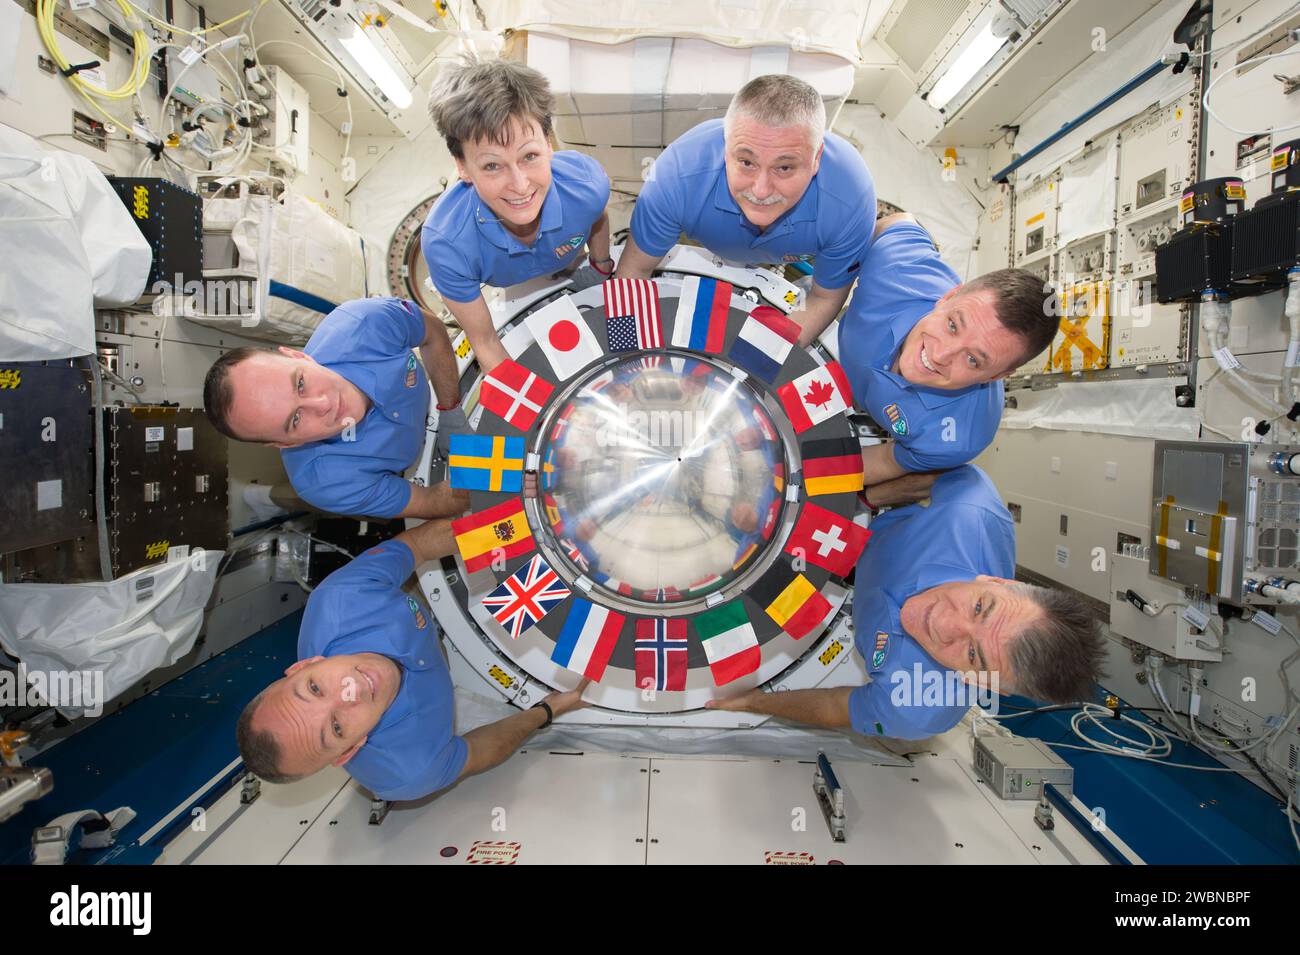 Iss052e031832 (5.08.2017) --- Expedition 52 Besatzung posiert für ihr Crew-Porträt auf der Umlaufbahn, das sich um die interne Luftschleuse des Japanischen Experiments-Moduls (JEM) an Bord der Internationalen Raumstation (ISS) versammelt hat. Flaggen von allen internationalen Partnern sind um die Luke der Luftschleuse sichtbar. Von links nach rechts: Astronaut Randy Bresnik, Kosmonaut Sergey Ryzanskiy, Astronaut Peggy Whitson, Kosmonaut Fyodor Yurchikhin, Astronaut Jack Fischer und Astronaut Paolo Nespoli der Europäischen Weltraumorganisation (ESA). Stockfoto